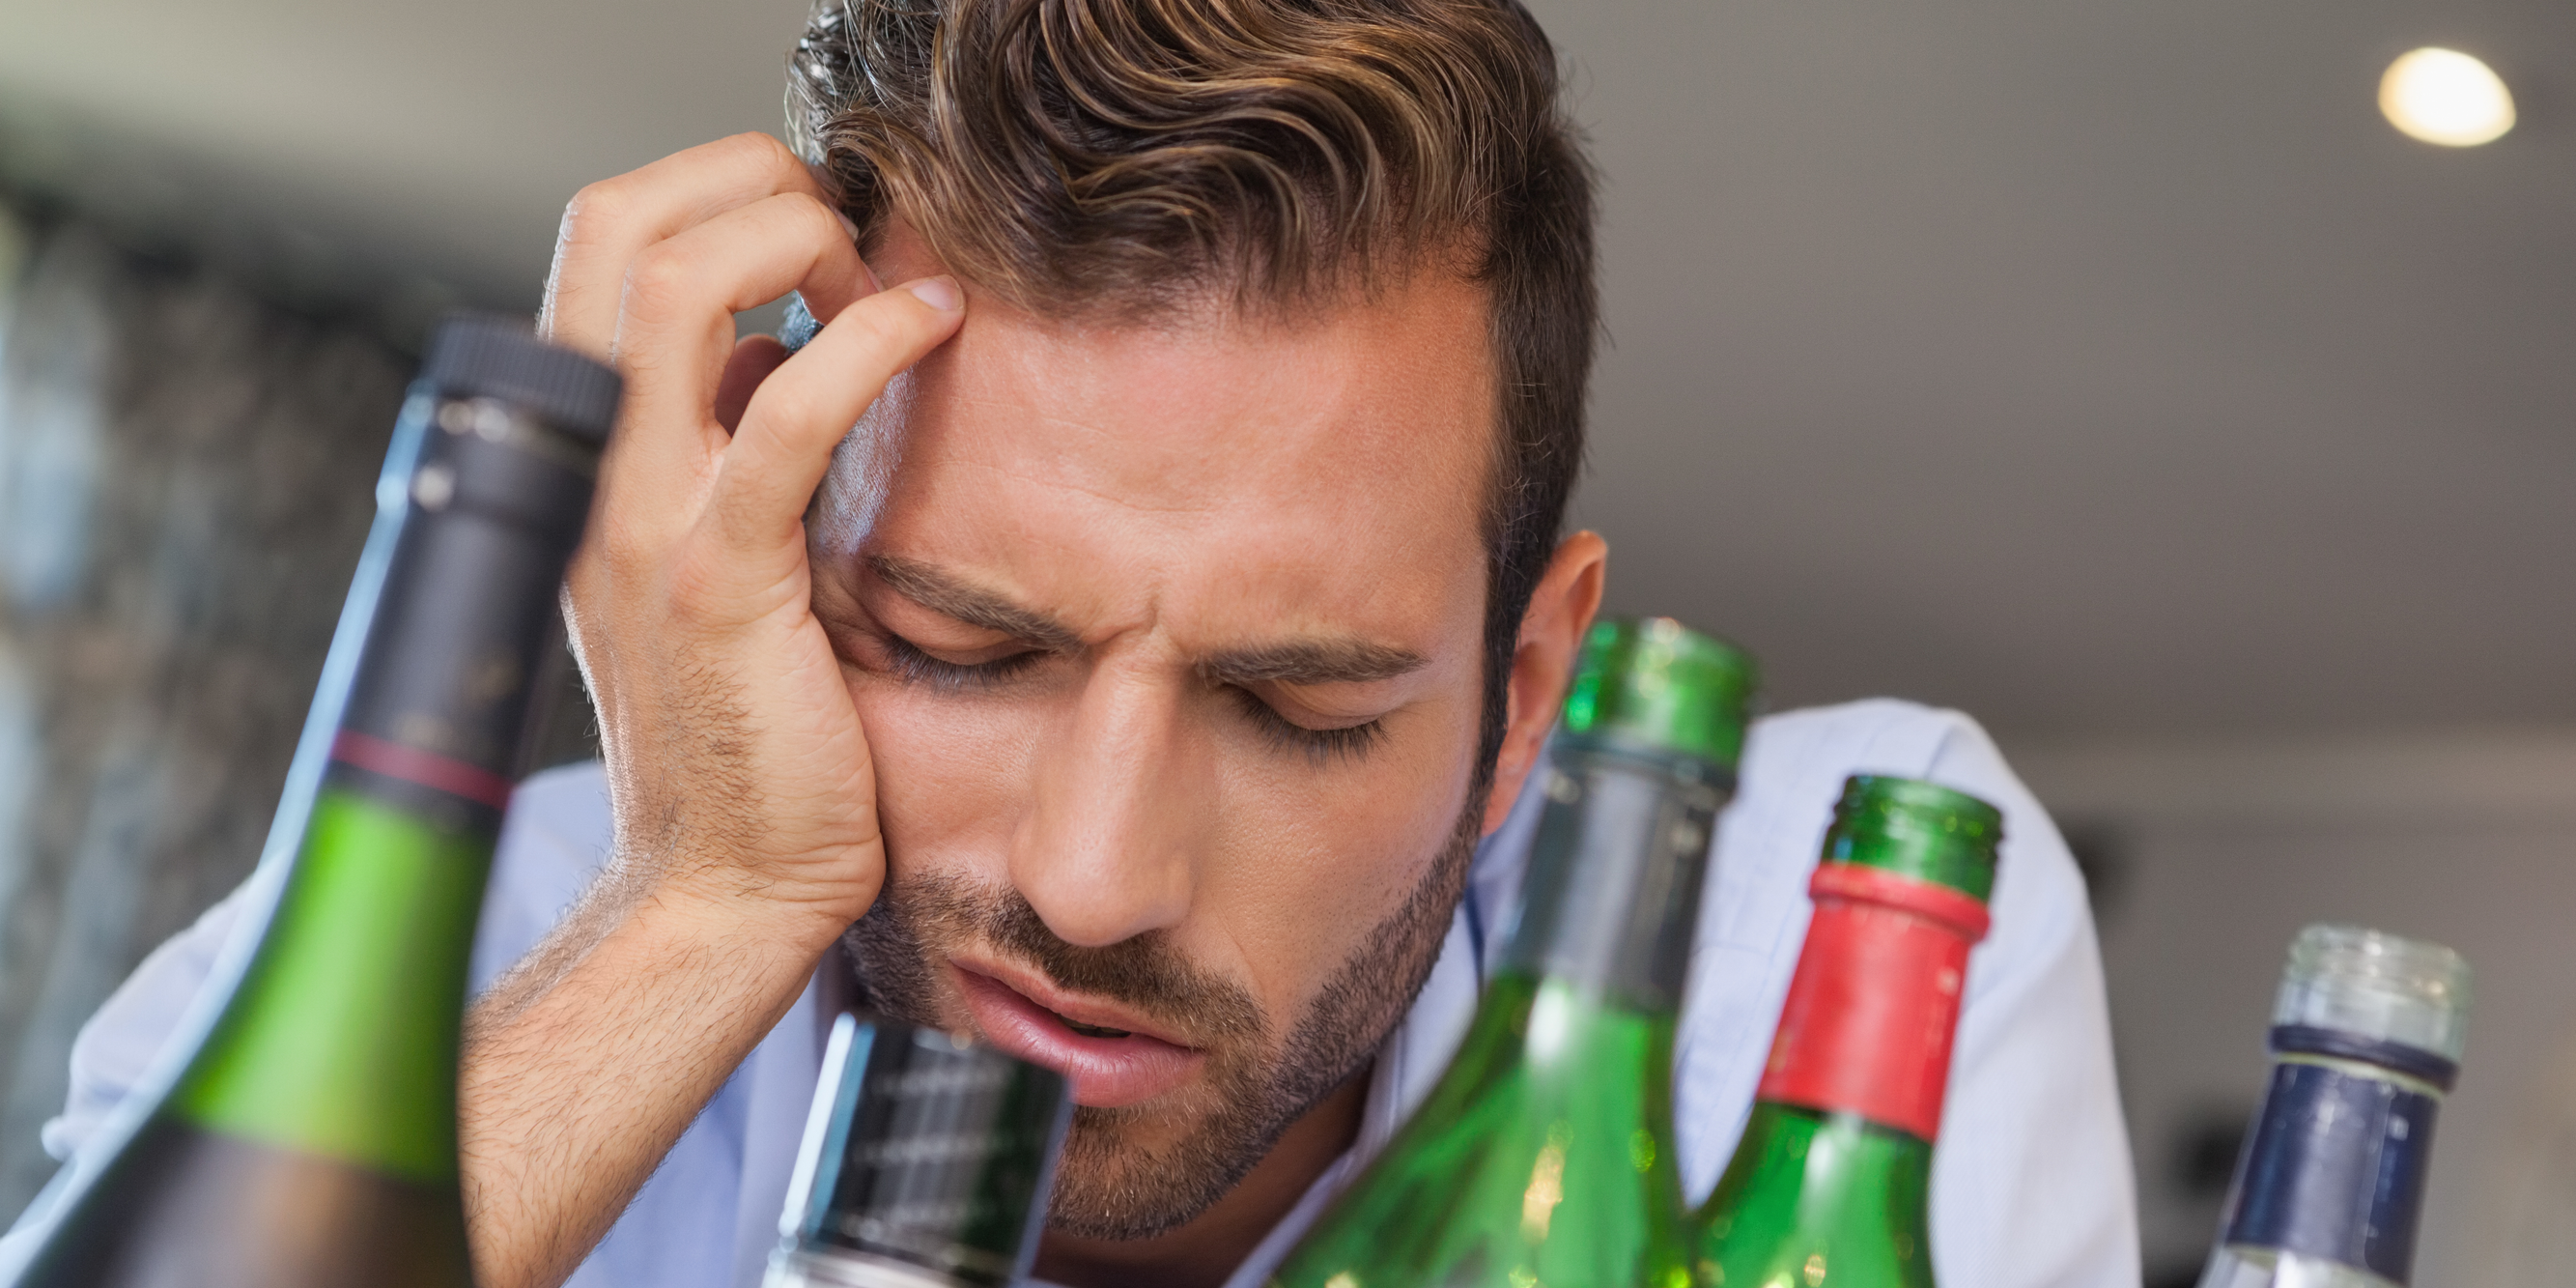 Почему возникают боли в боку после алкоголя?